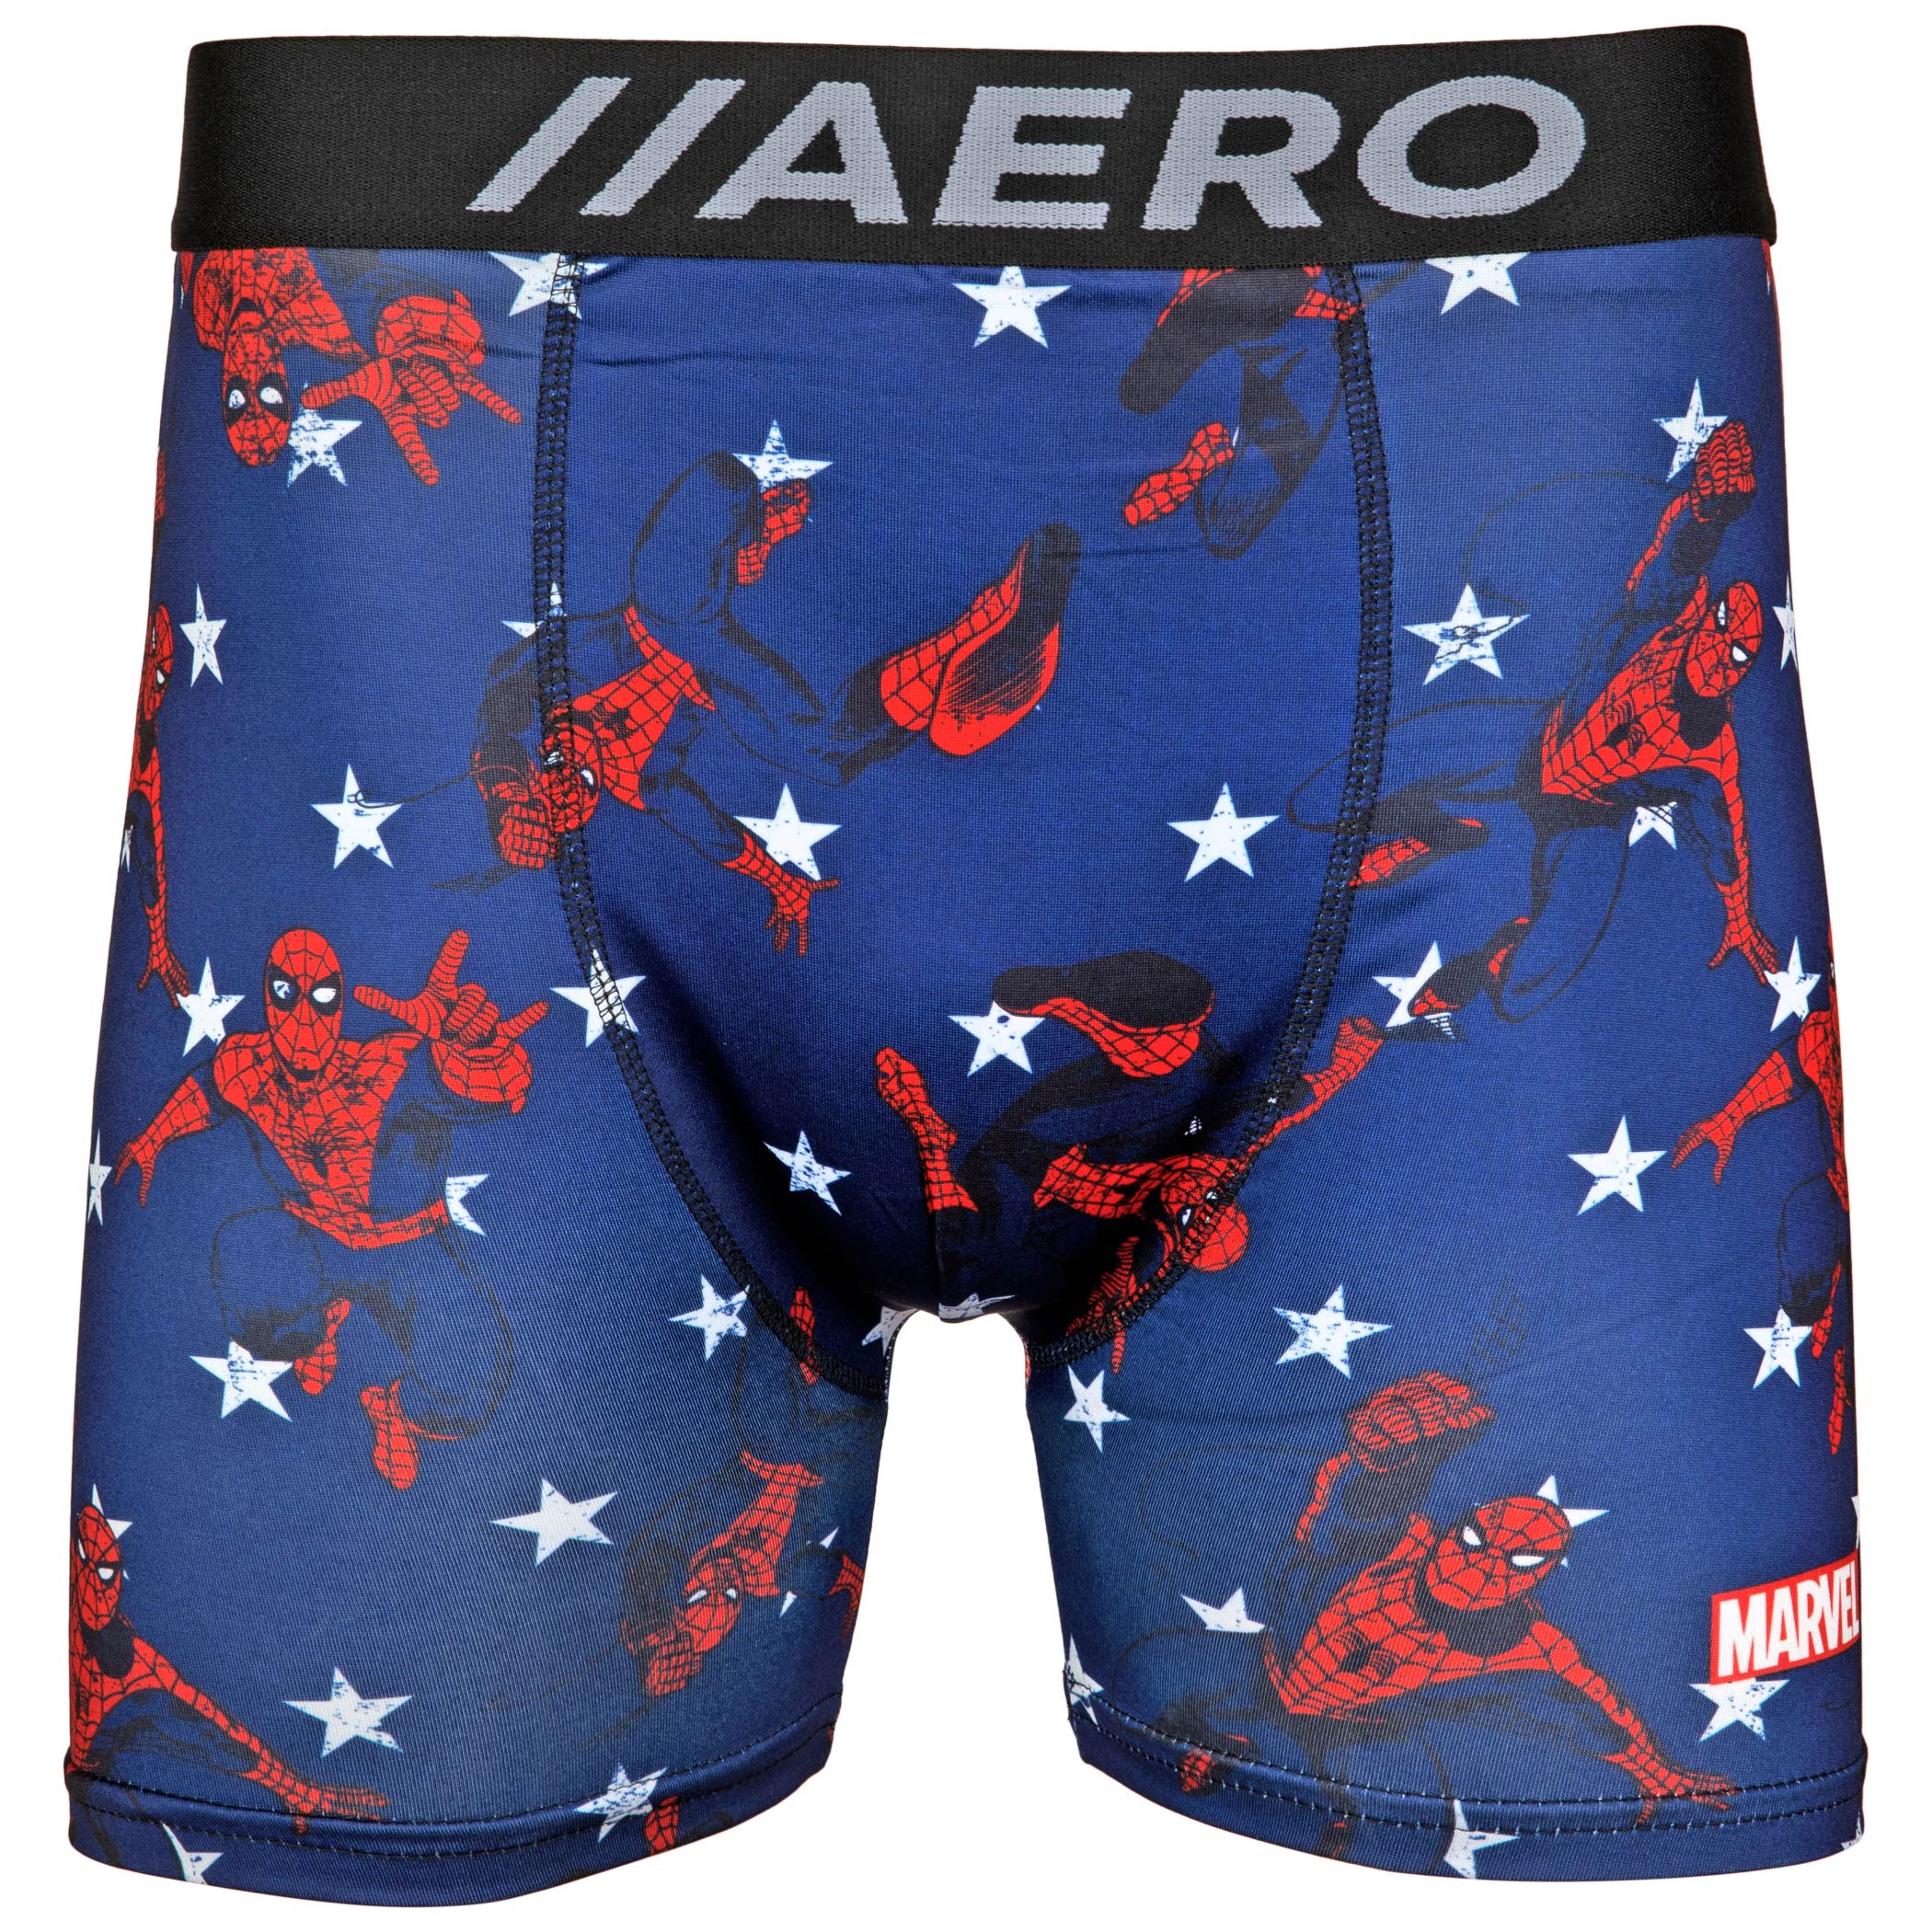 Spider-Man Swinging Aero Boxer Briefs Underwear and Sock Set